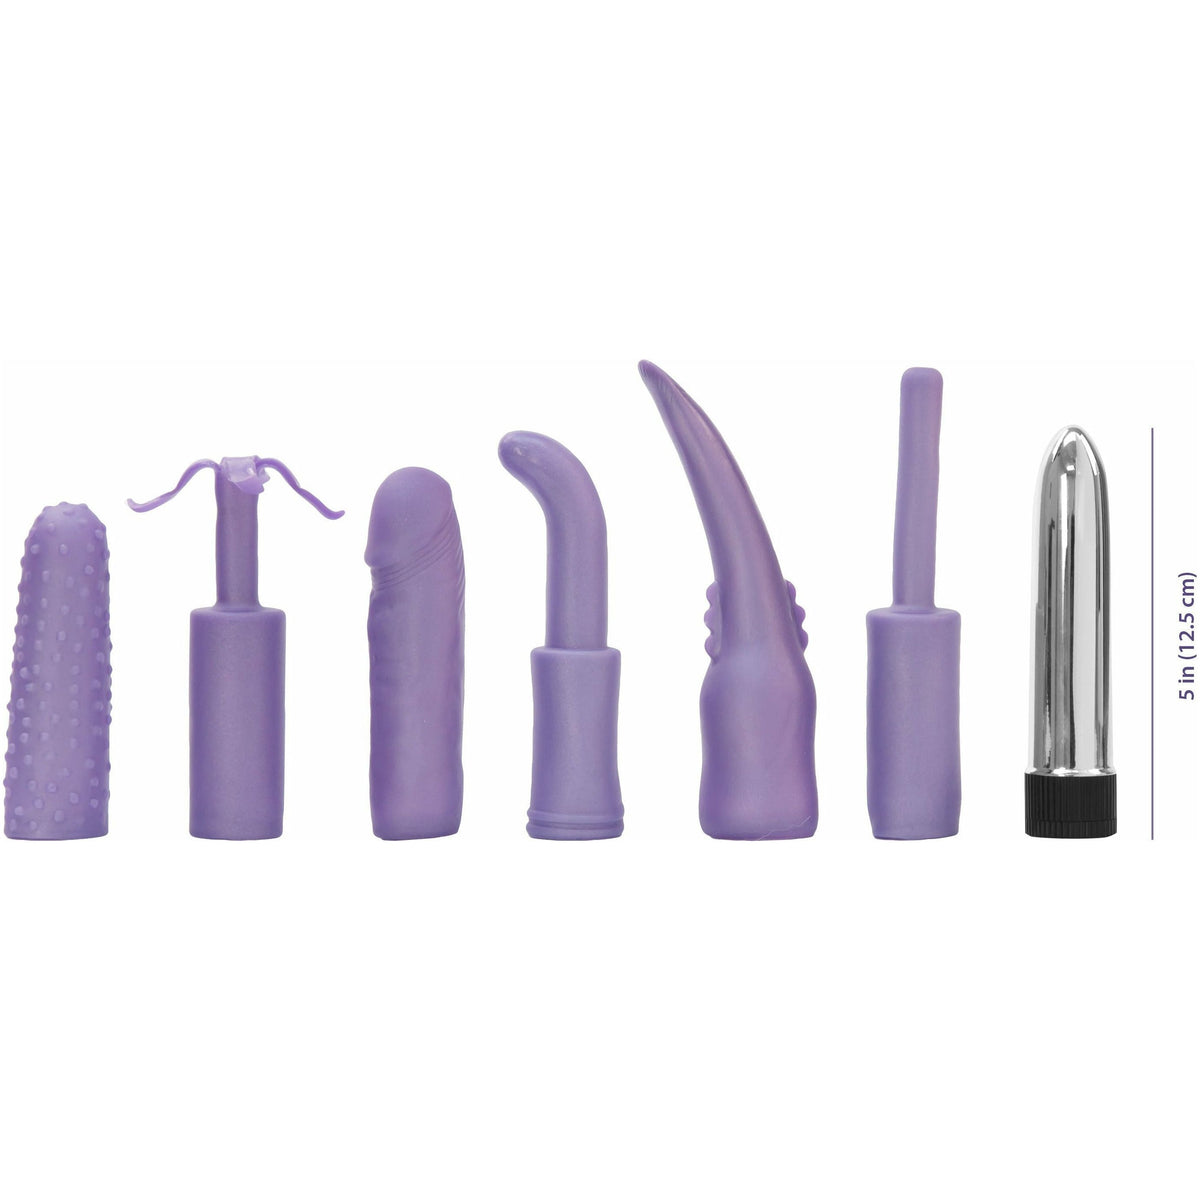 PGL Dirty Dozen - Sex Toy Kit - Purple